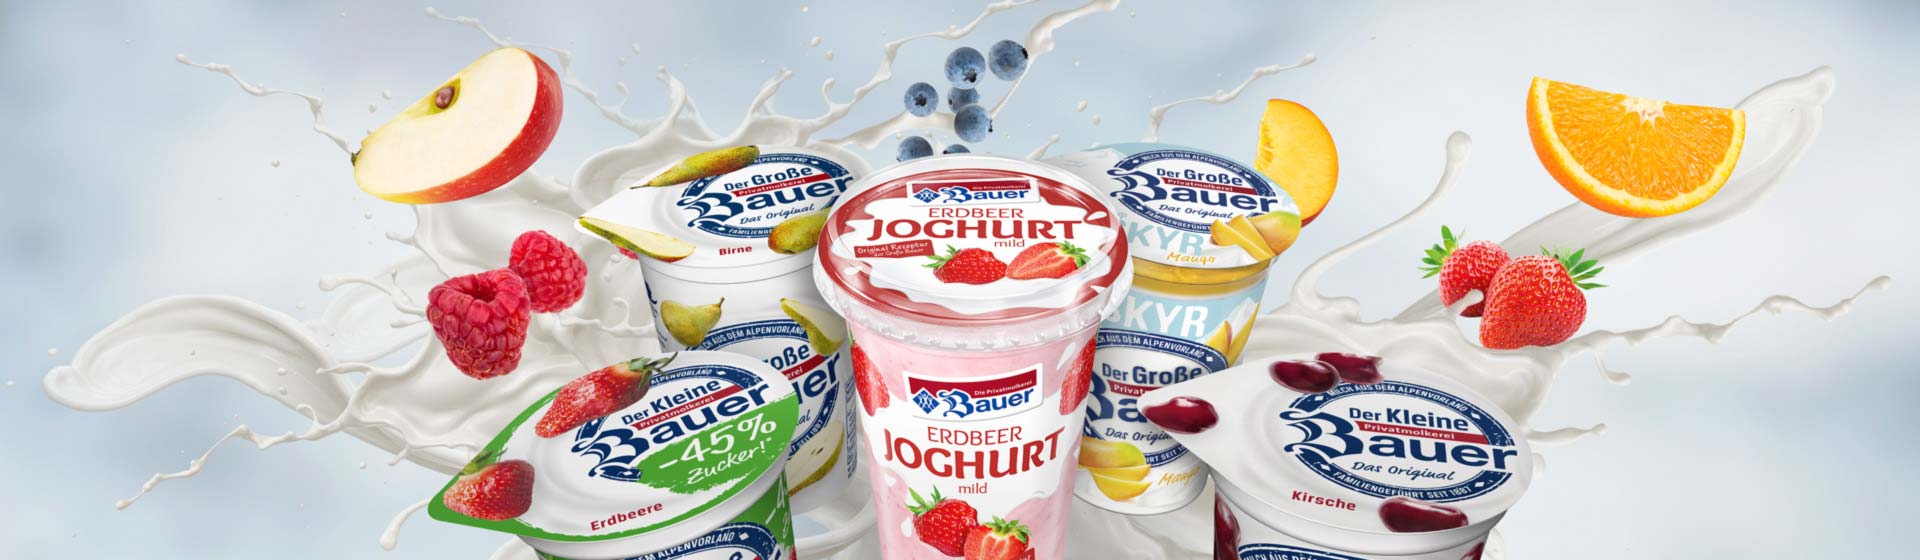 bauer natur joghurt trinkjoghurt fruchtjoghurt